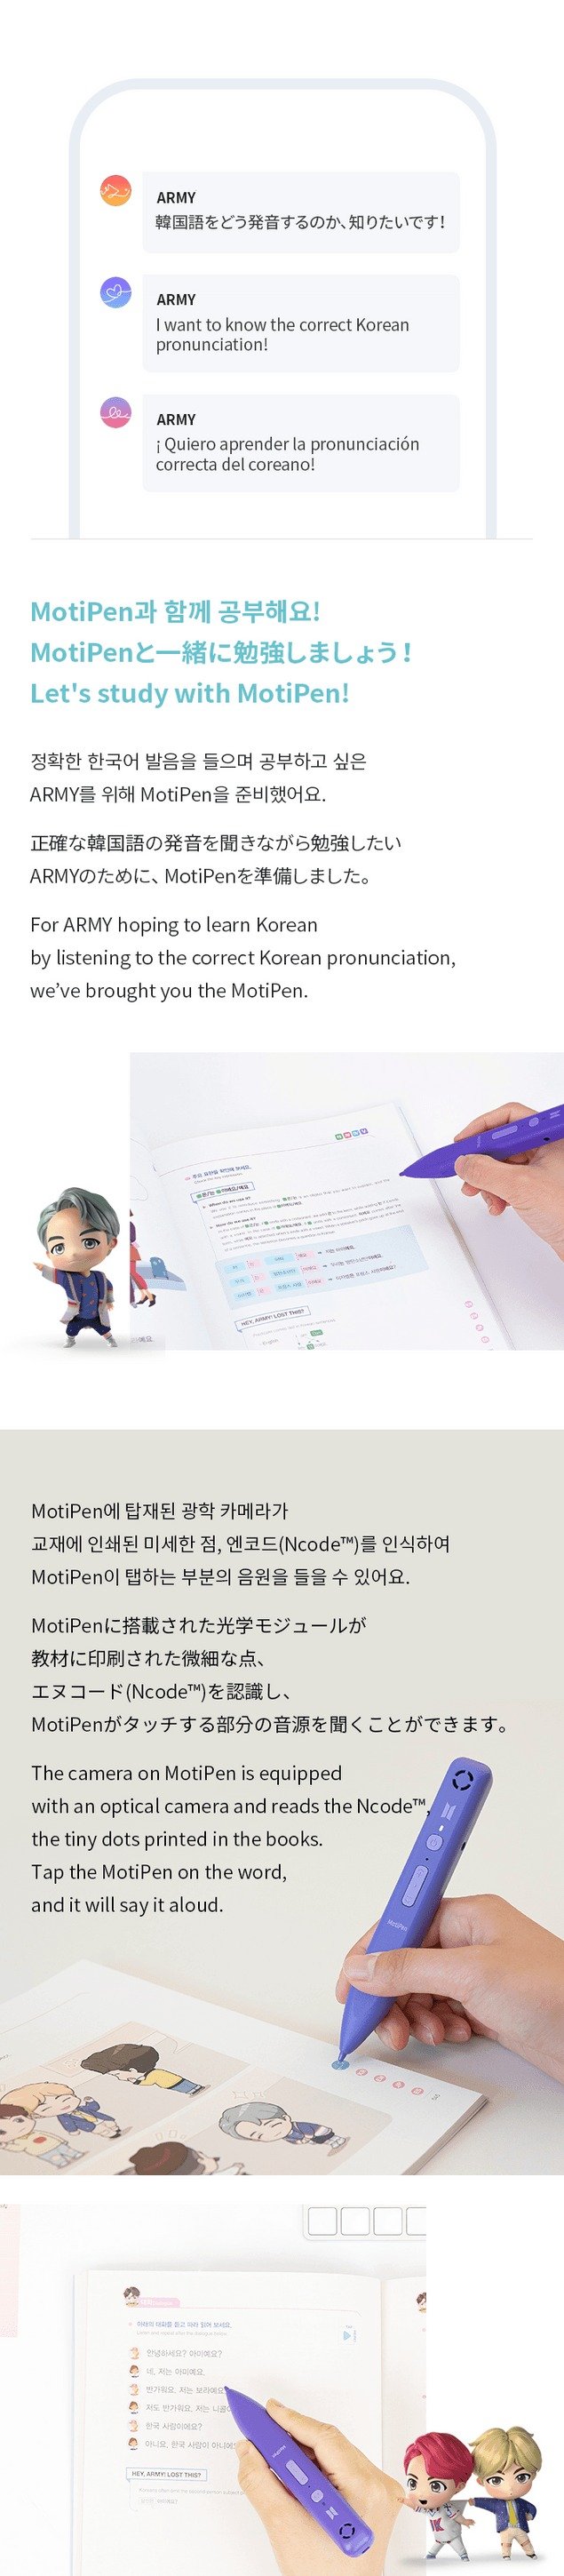 ¡Aprender! Coreano con BTS Global Edition (nuevo paquete)